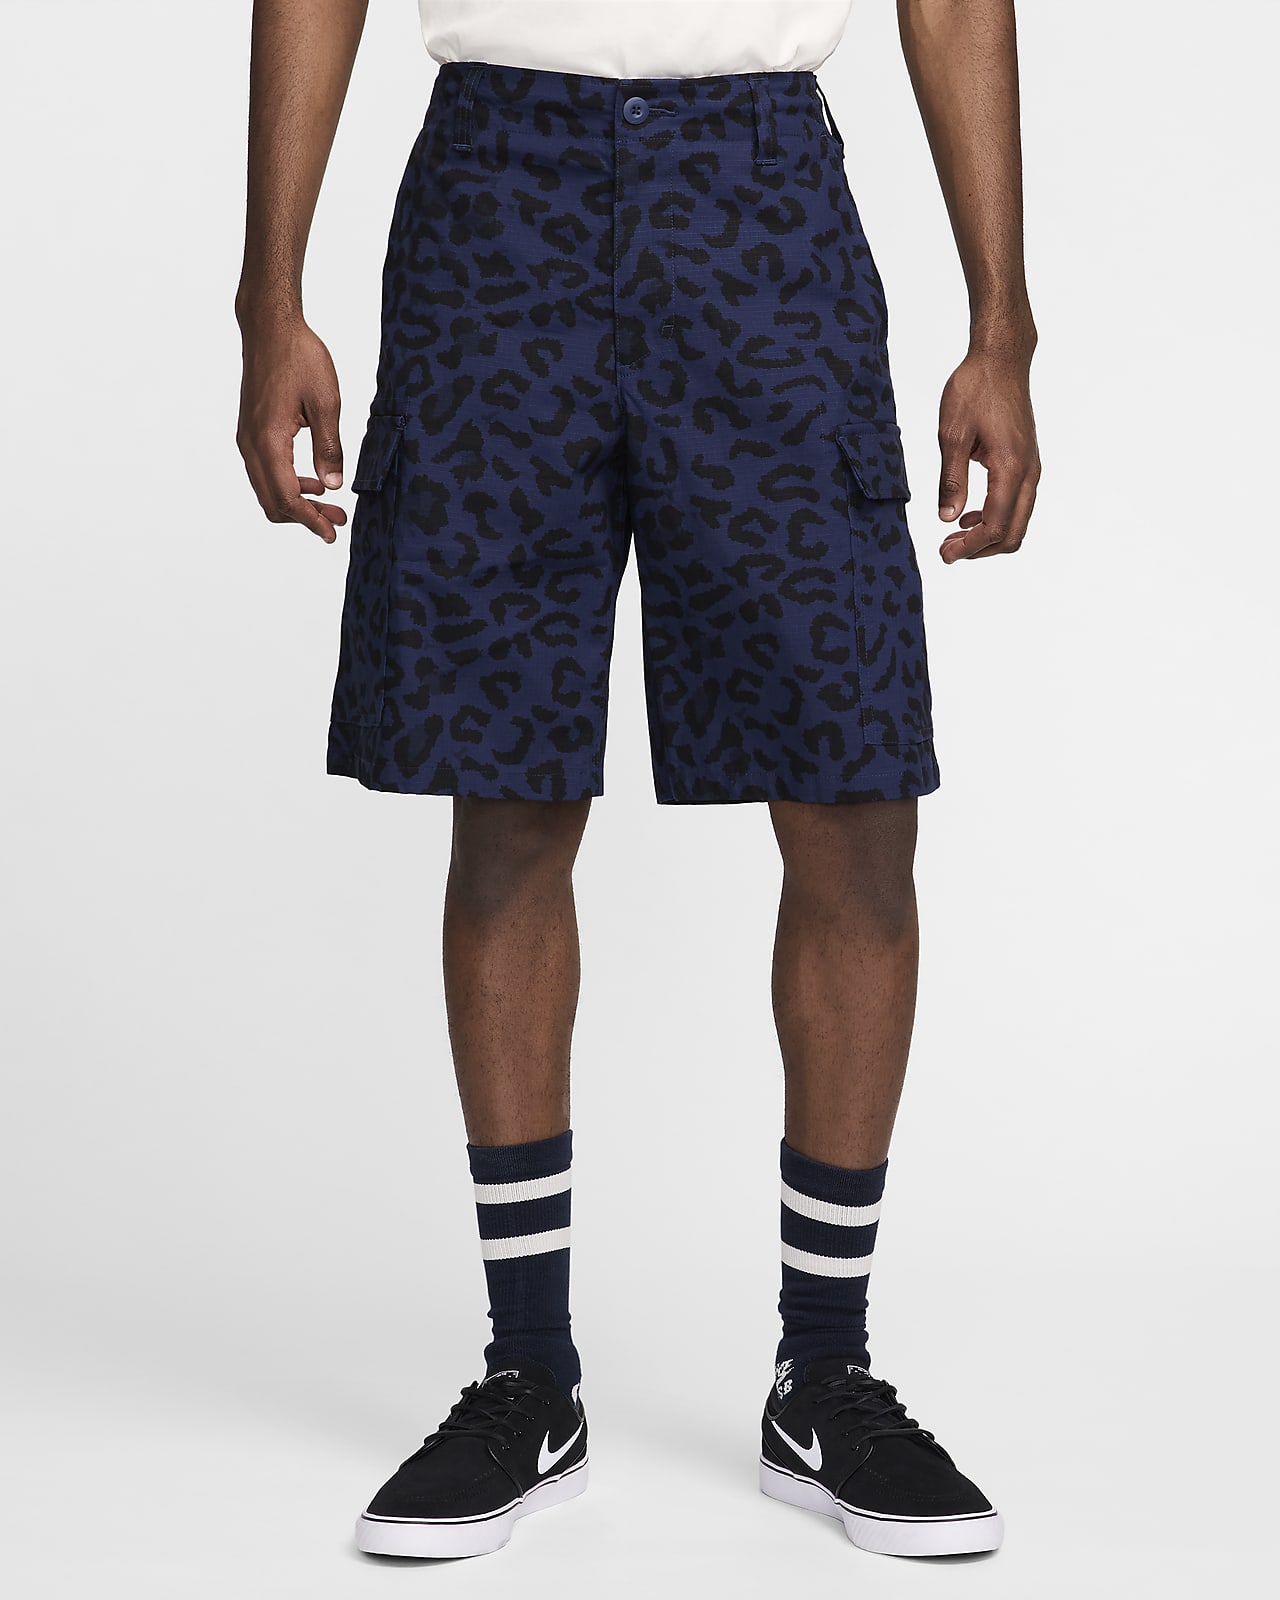 Nike SB Kearny Pantalón corto con estampado por toda la prenda - Hombre